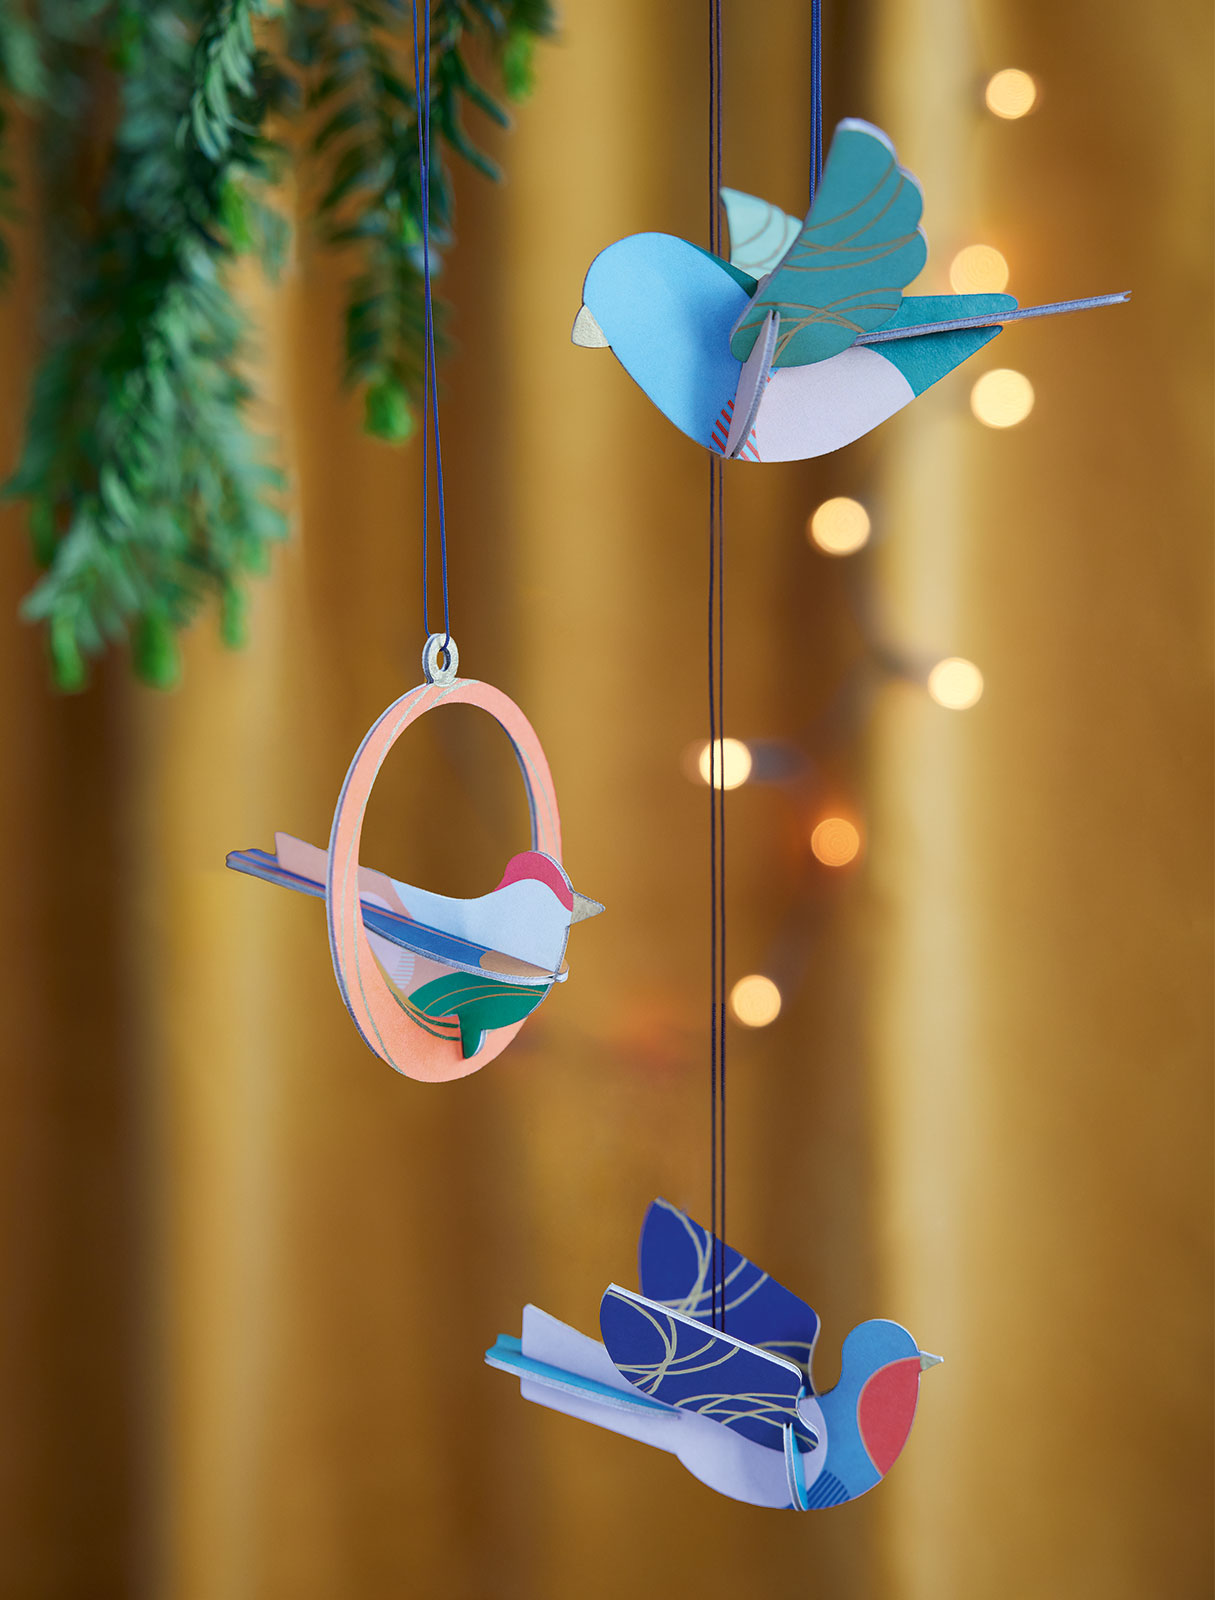 Závěsné nejen vánoční ozdoby pro váš domov tři zpěvní ptáčci od značky Studio ROOF